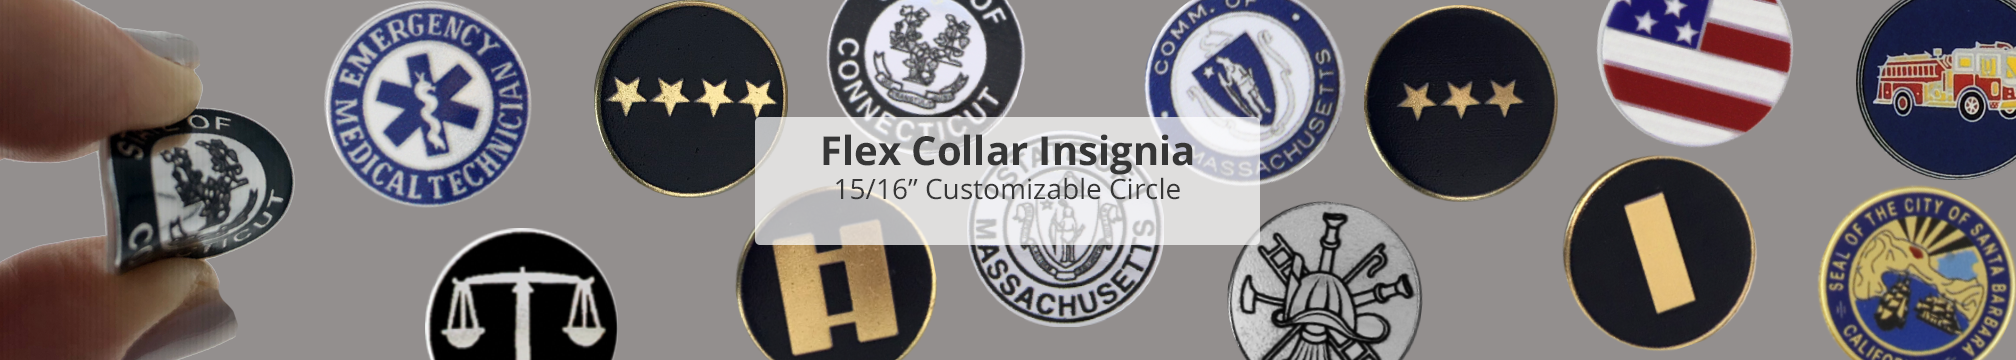 Flex collar Insignia